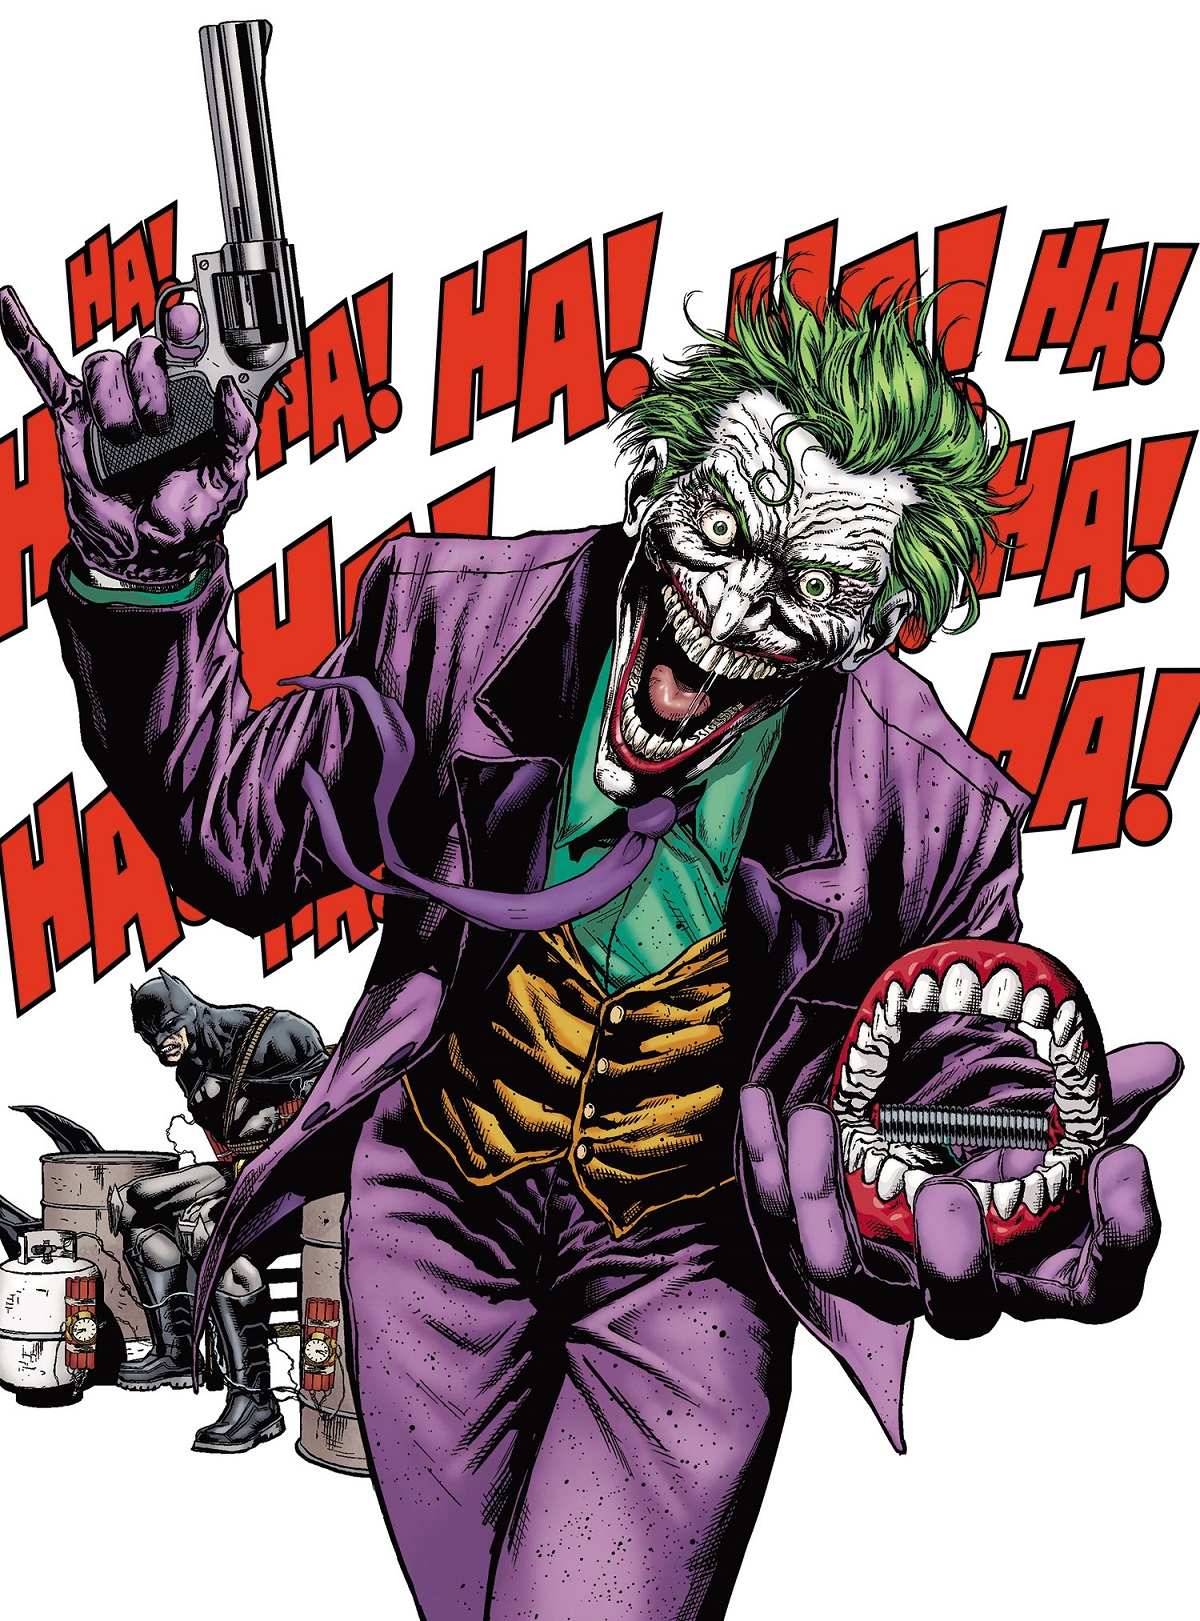 Joker...always Joker